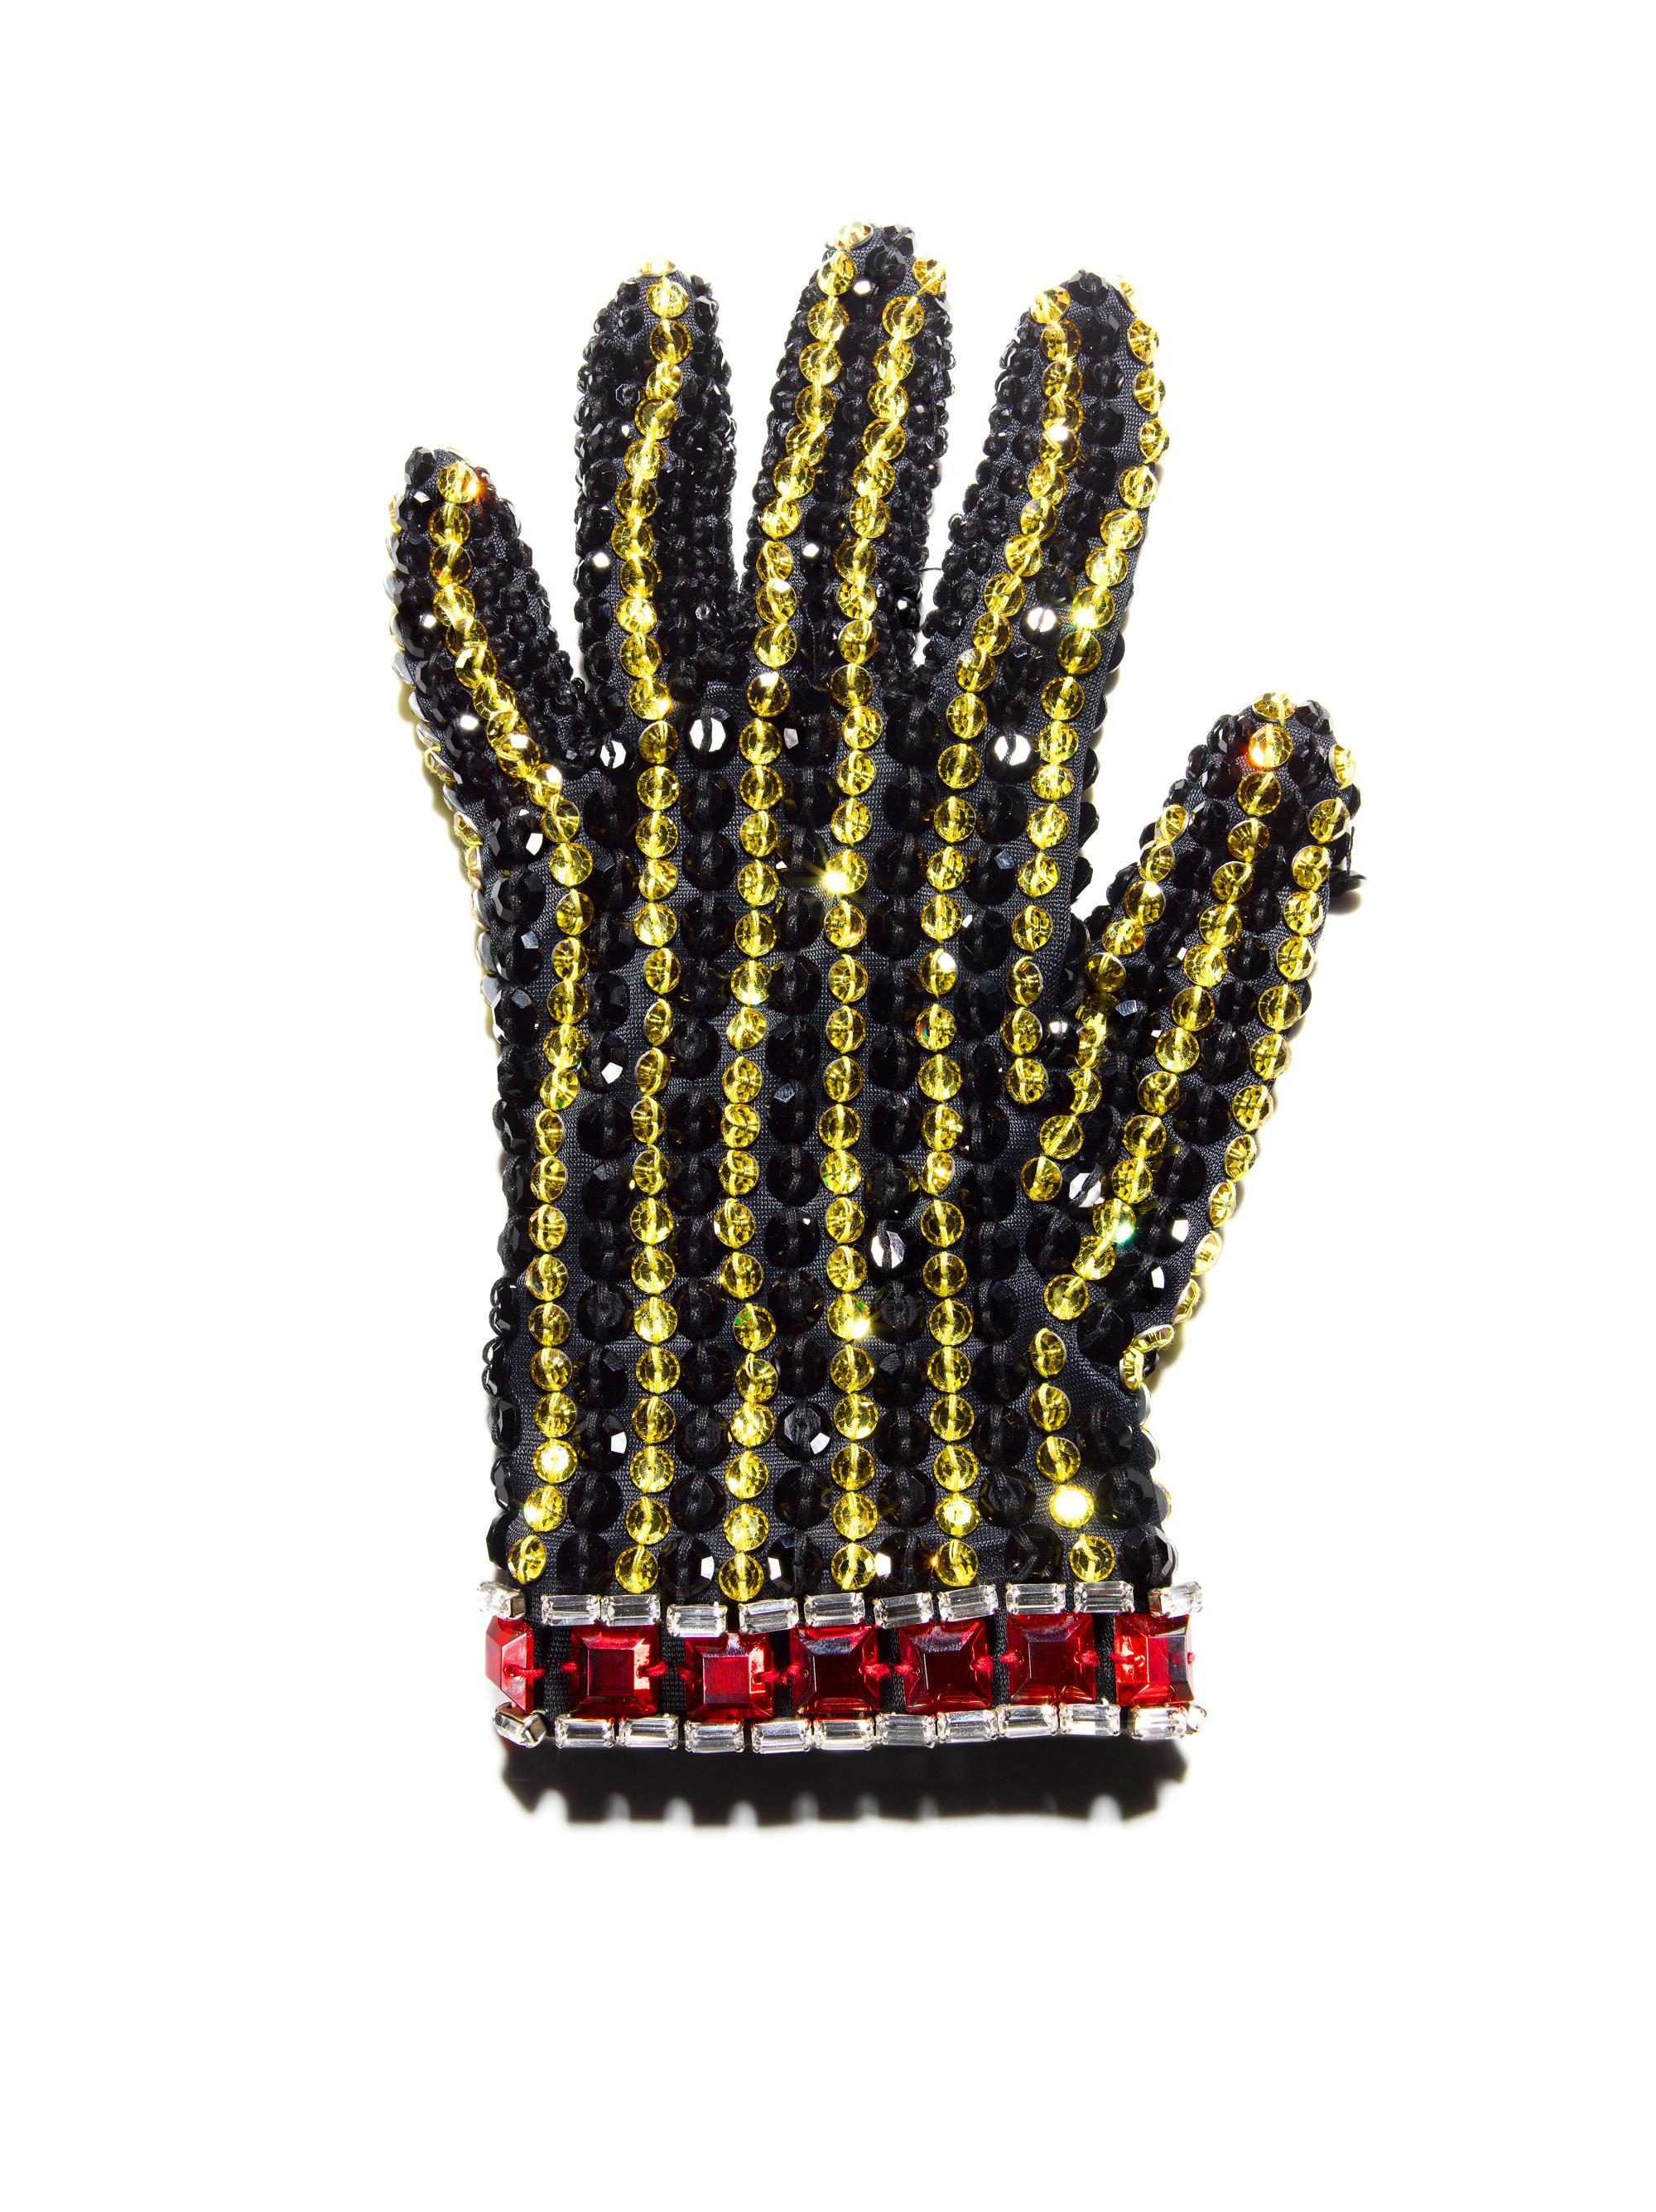 Tom Schierlitz Still-Life Photograph – Schwarzer Handschuh (Michael Jackson) 48 x 64"  